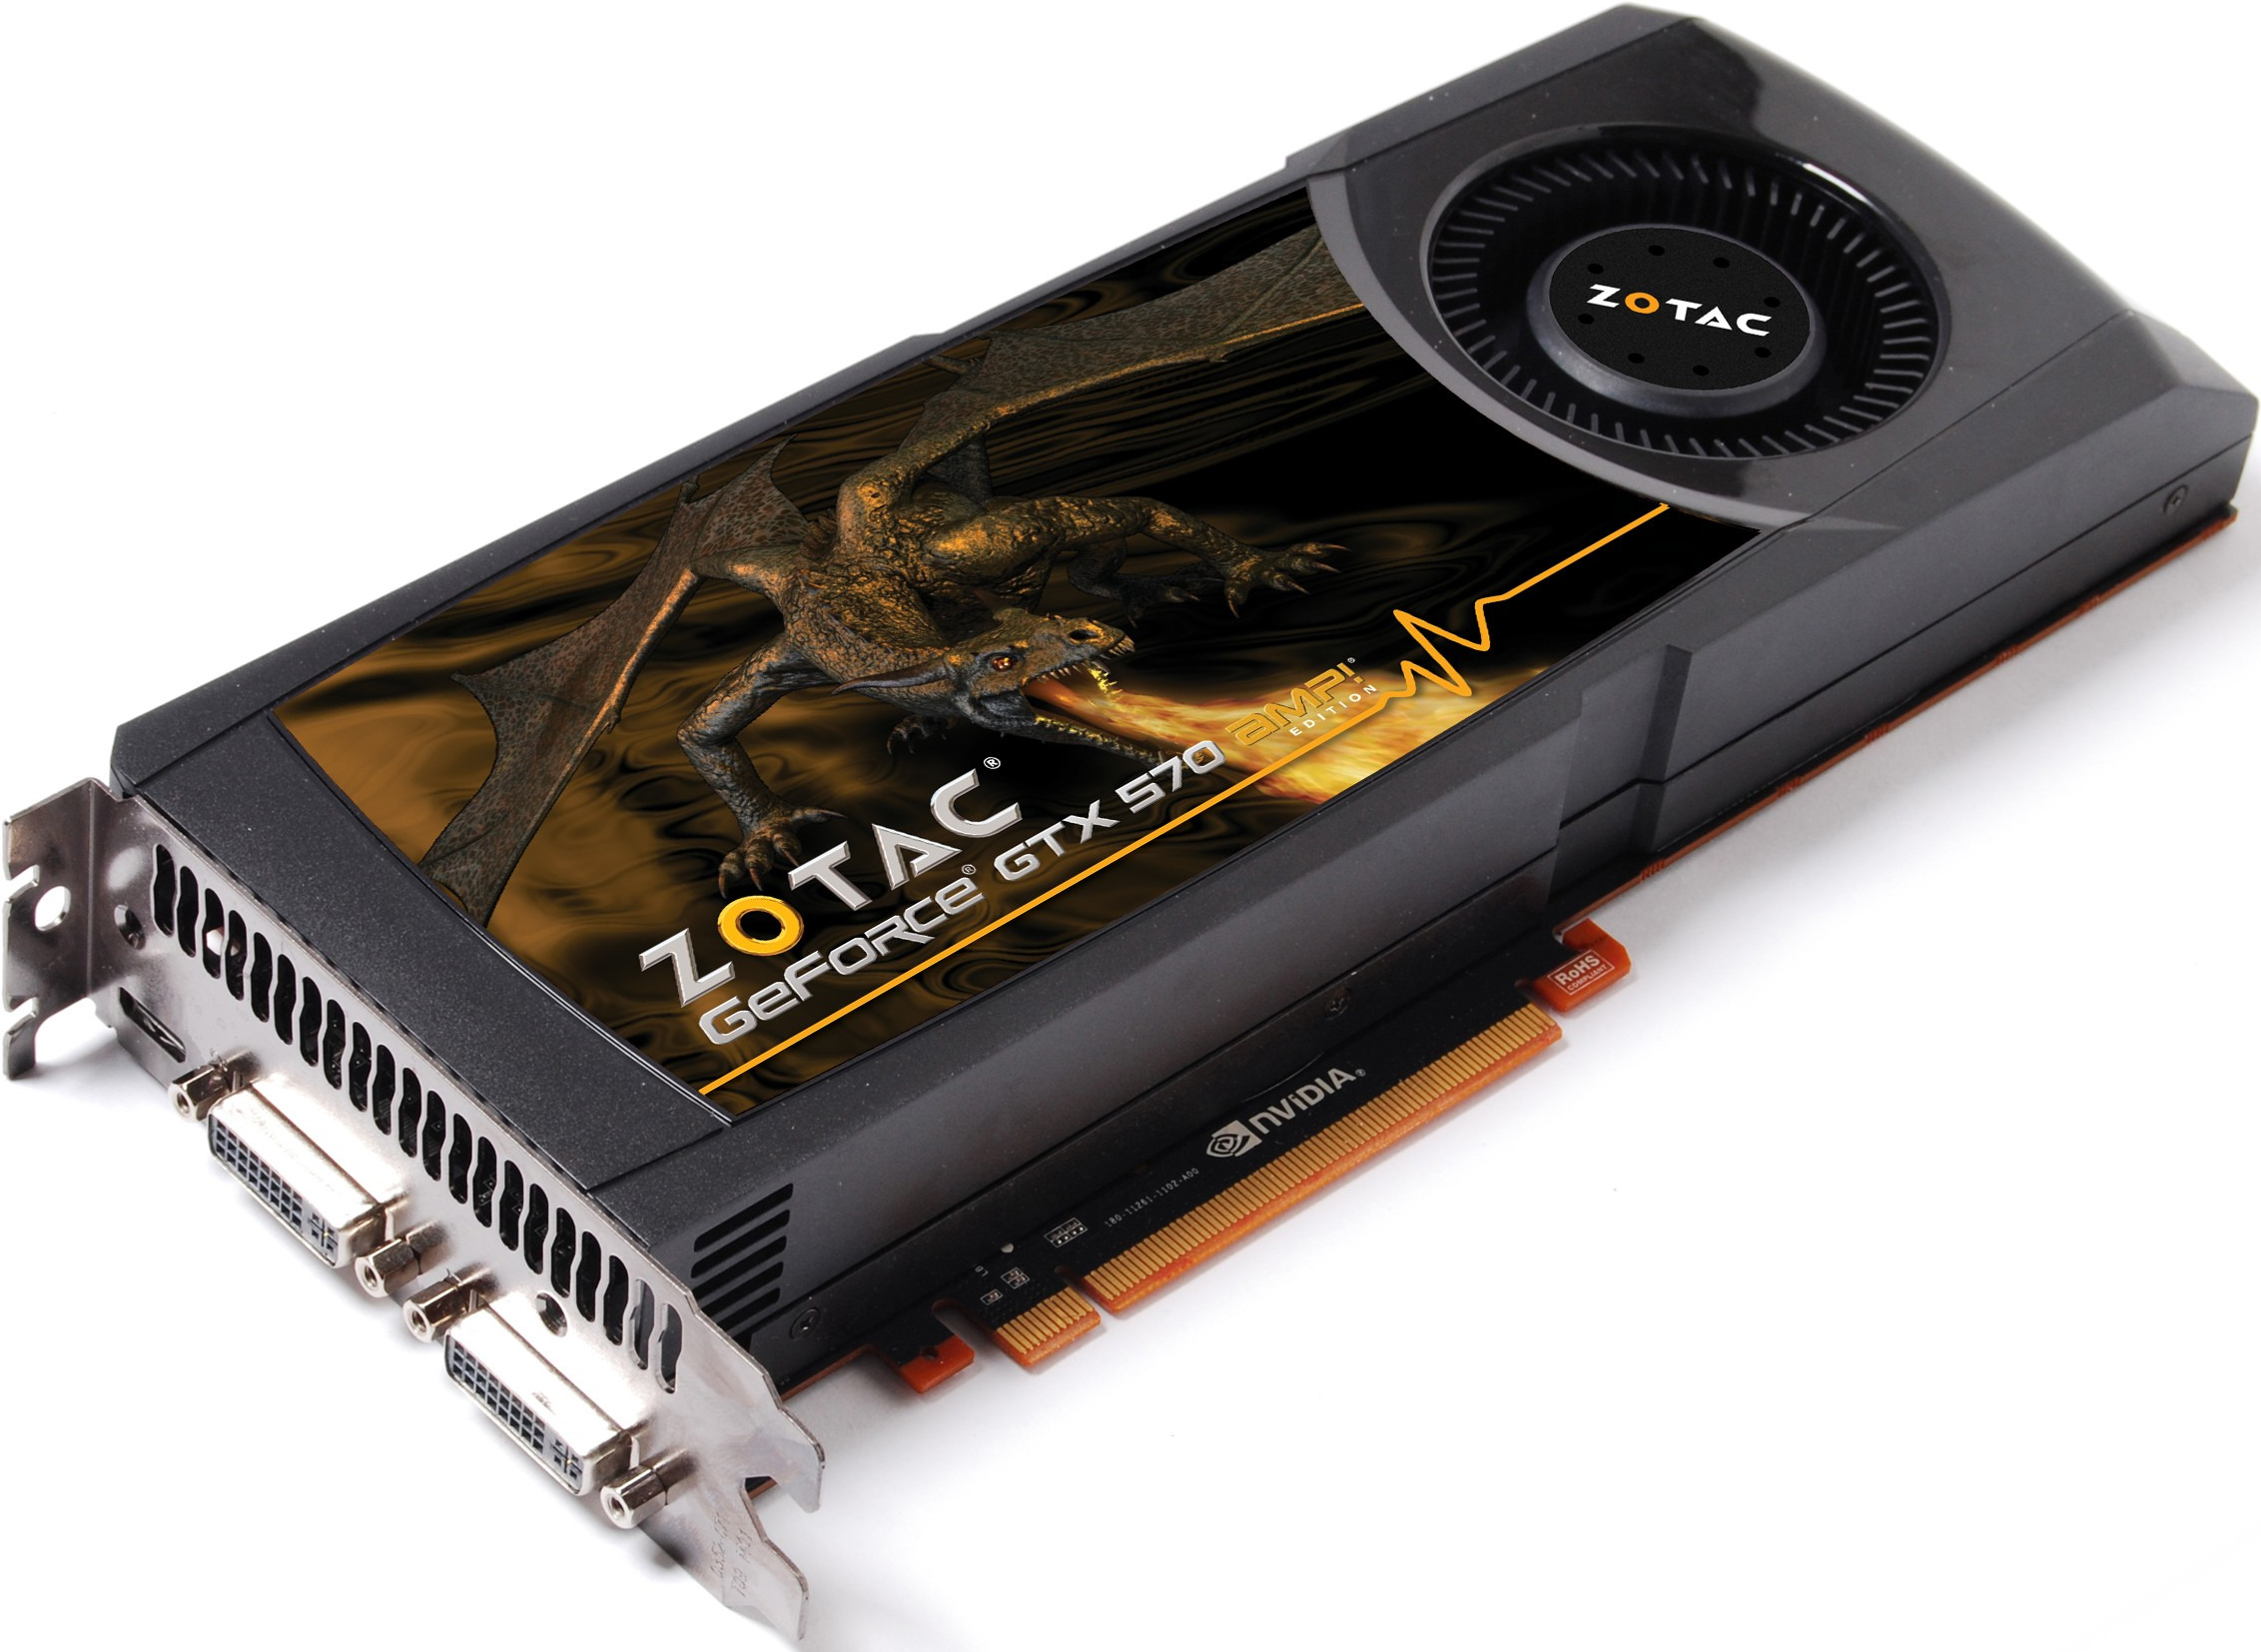 Zotac GeForce GTX570 ZT-50202-10P - зображення 1